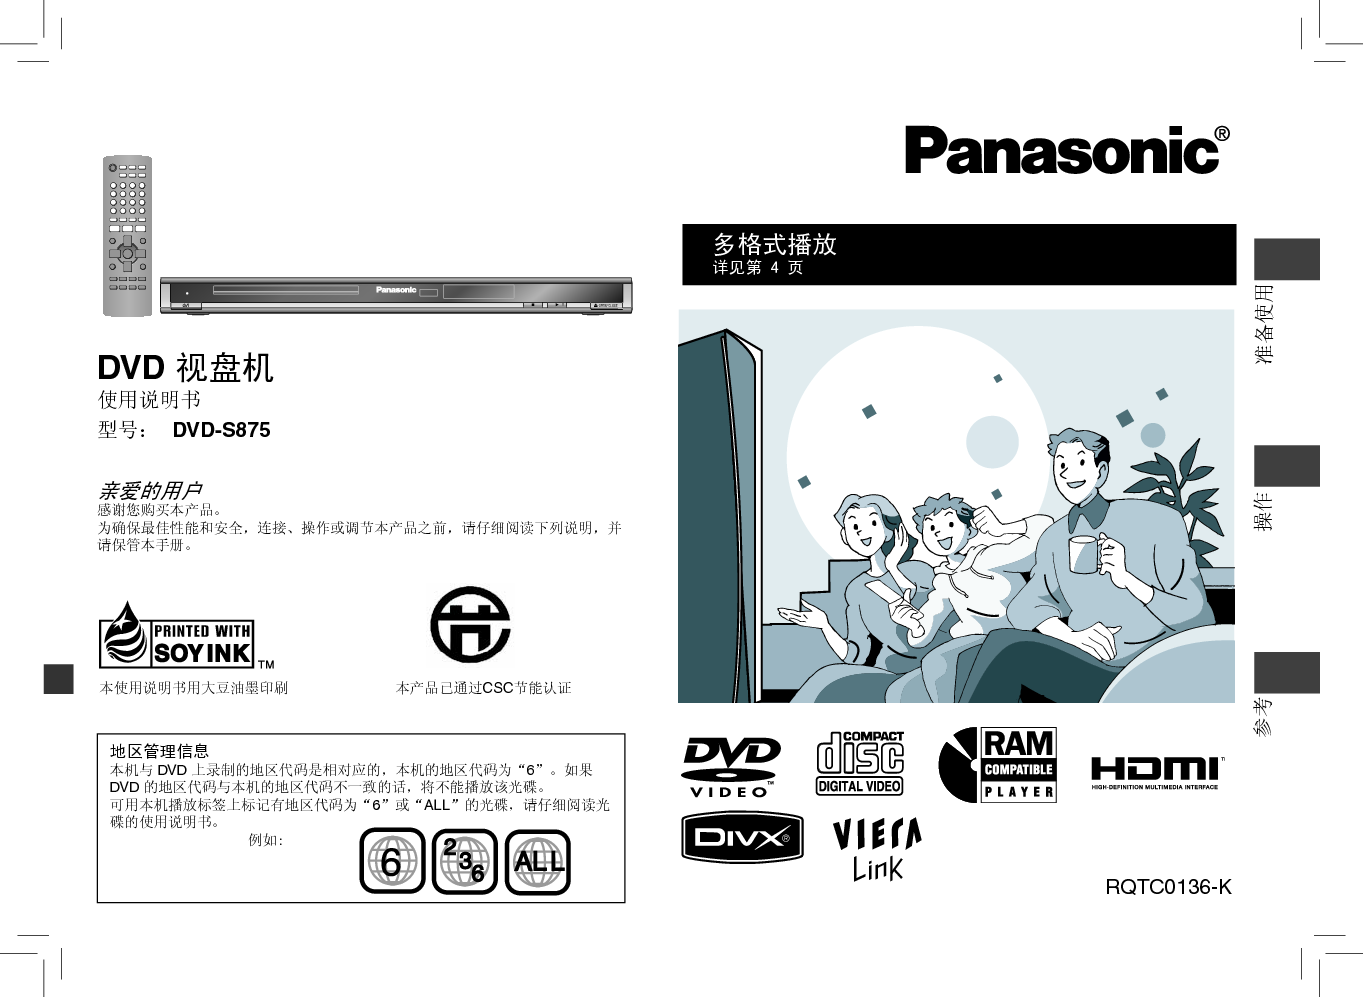 松下 Panasonic DVD-S875 说明书 封面